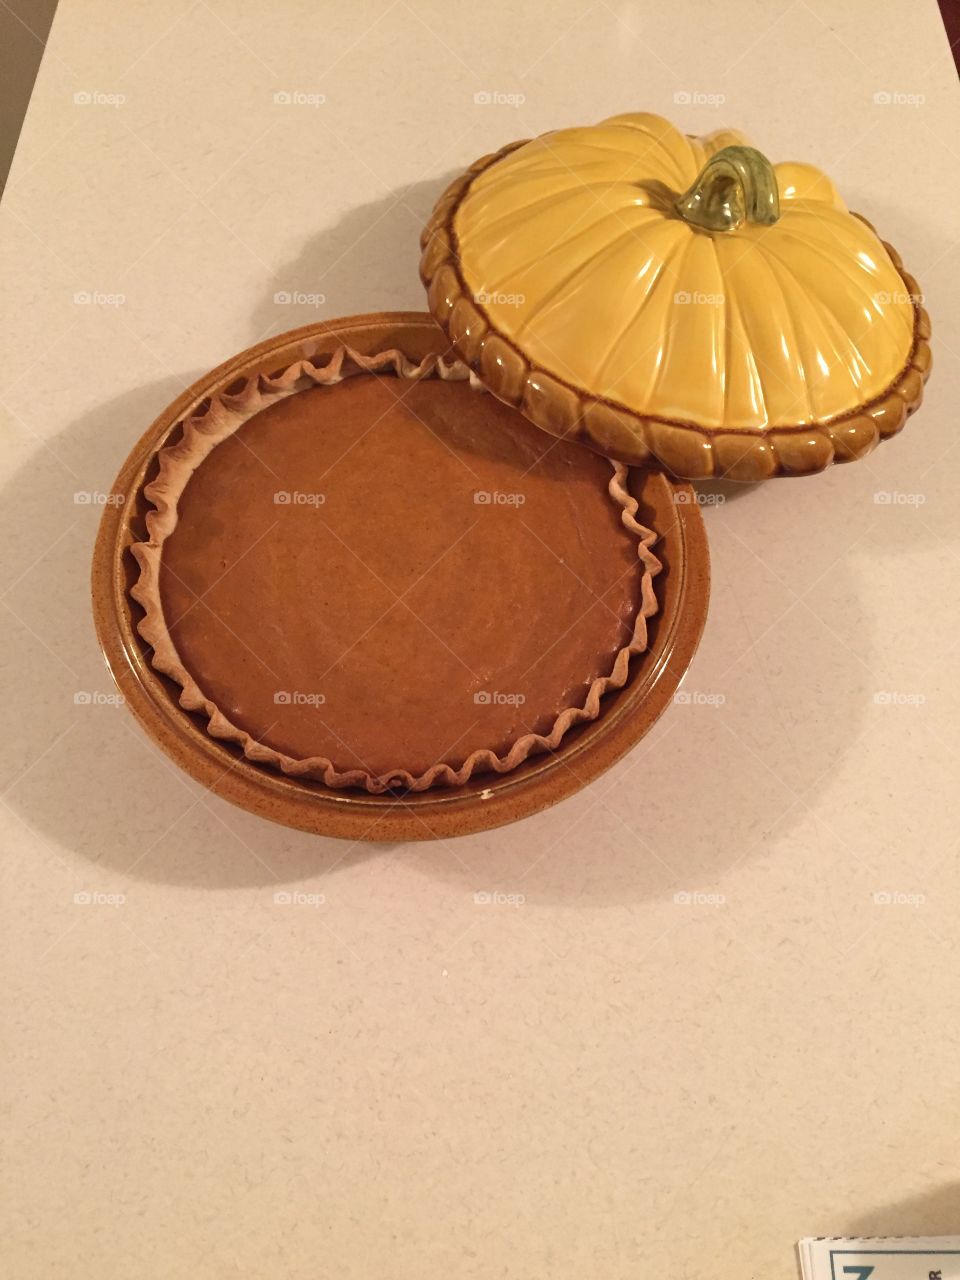 Perfect homemade pumpkin pie!